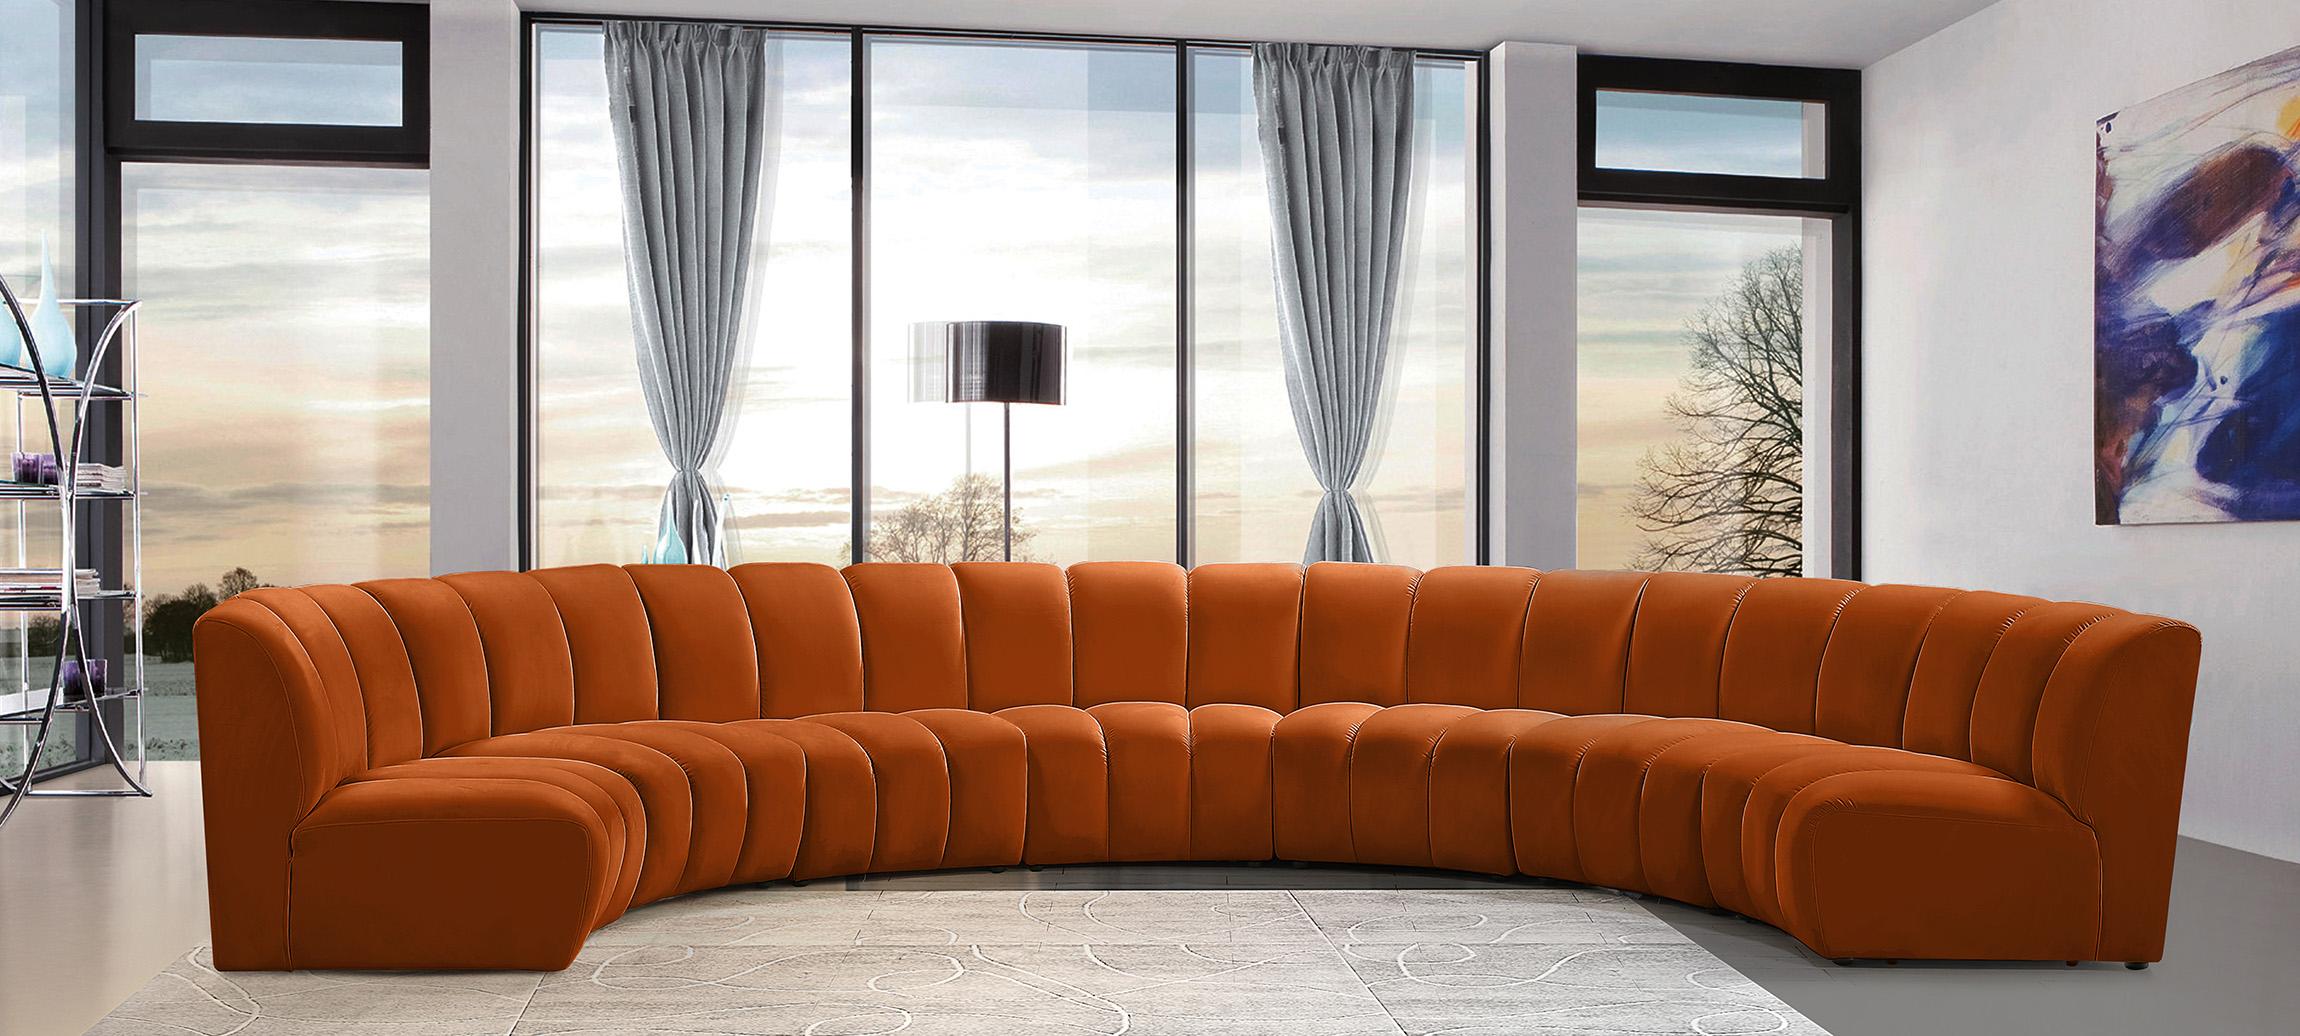 

    
Meridian Furniture INFINITY 638Cognac-7PC Modular Sectional Sofa Cognac 638Cognac-7PC
